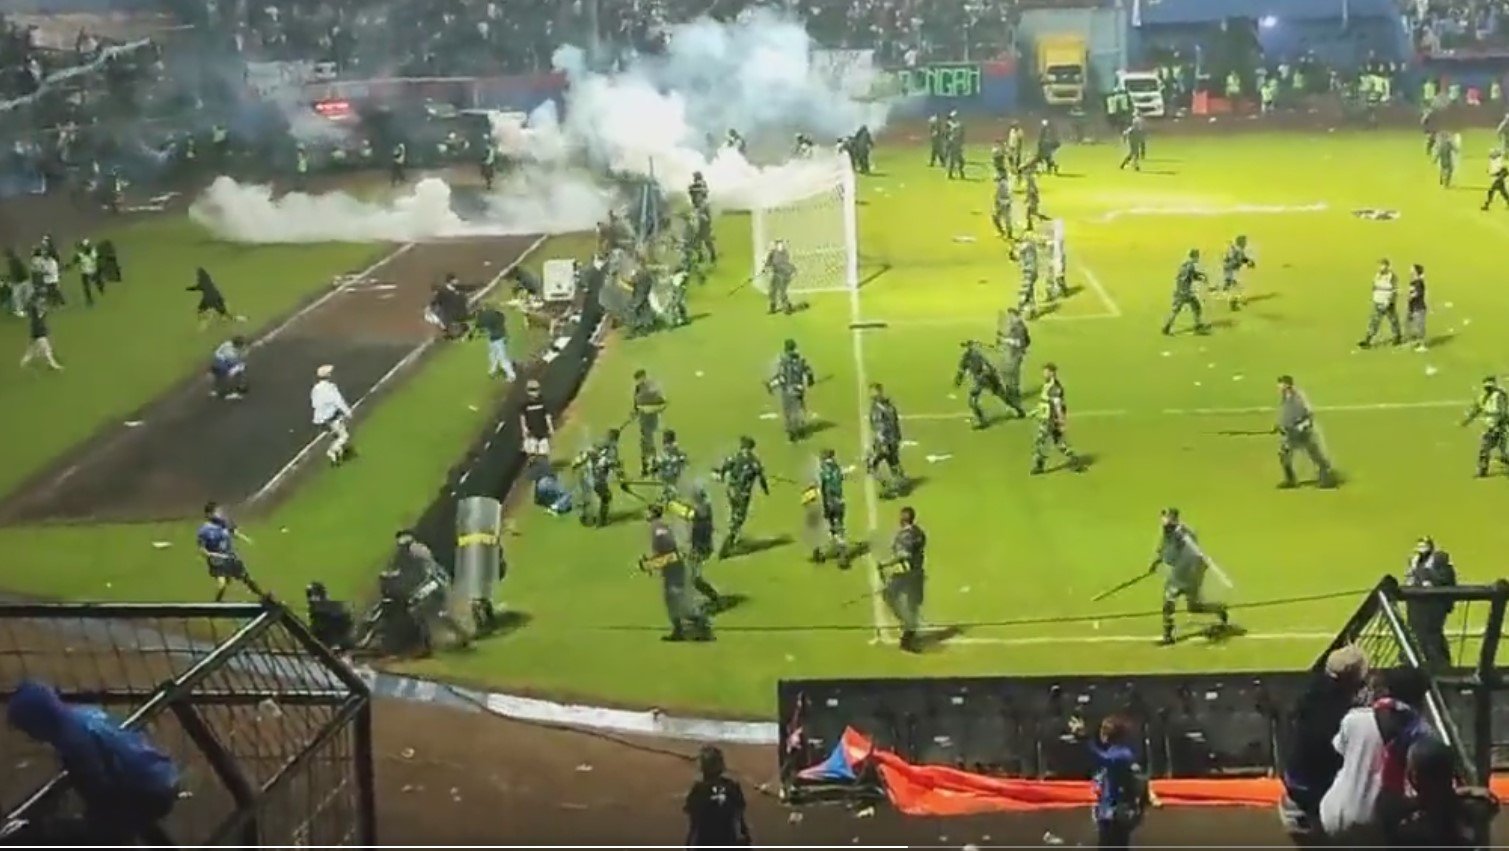  Tragedie: Cel puţin 32 de copii au murit în busculada de pe stadionul din Indonezia